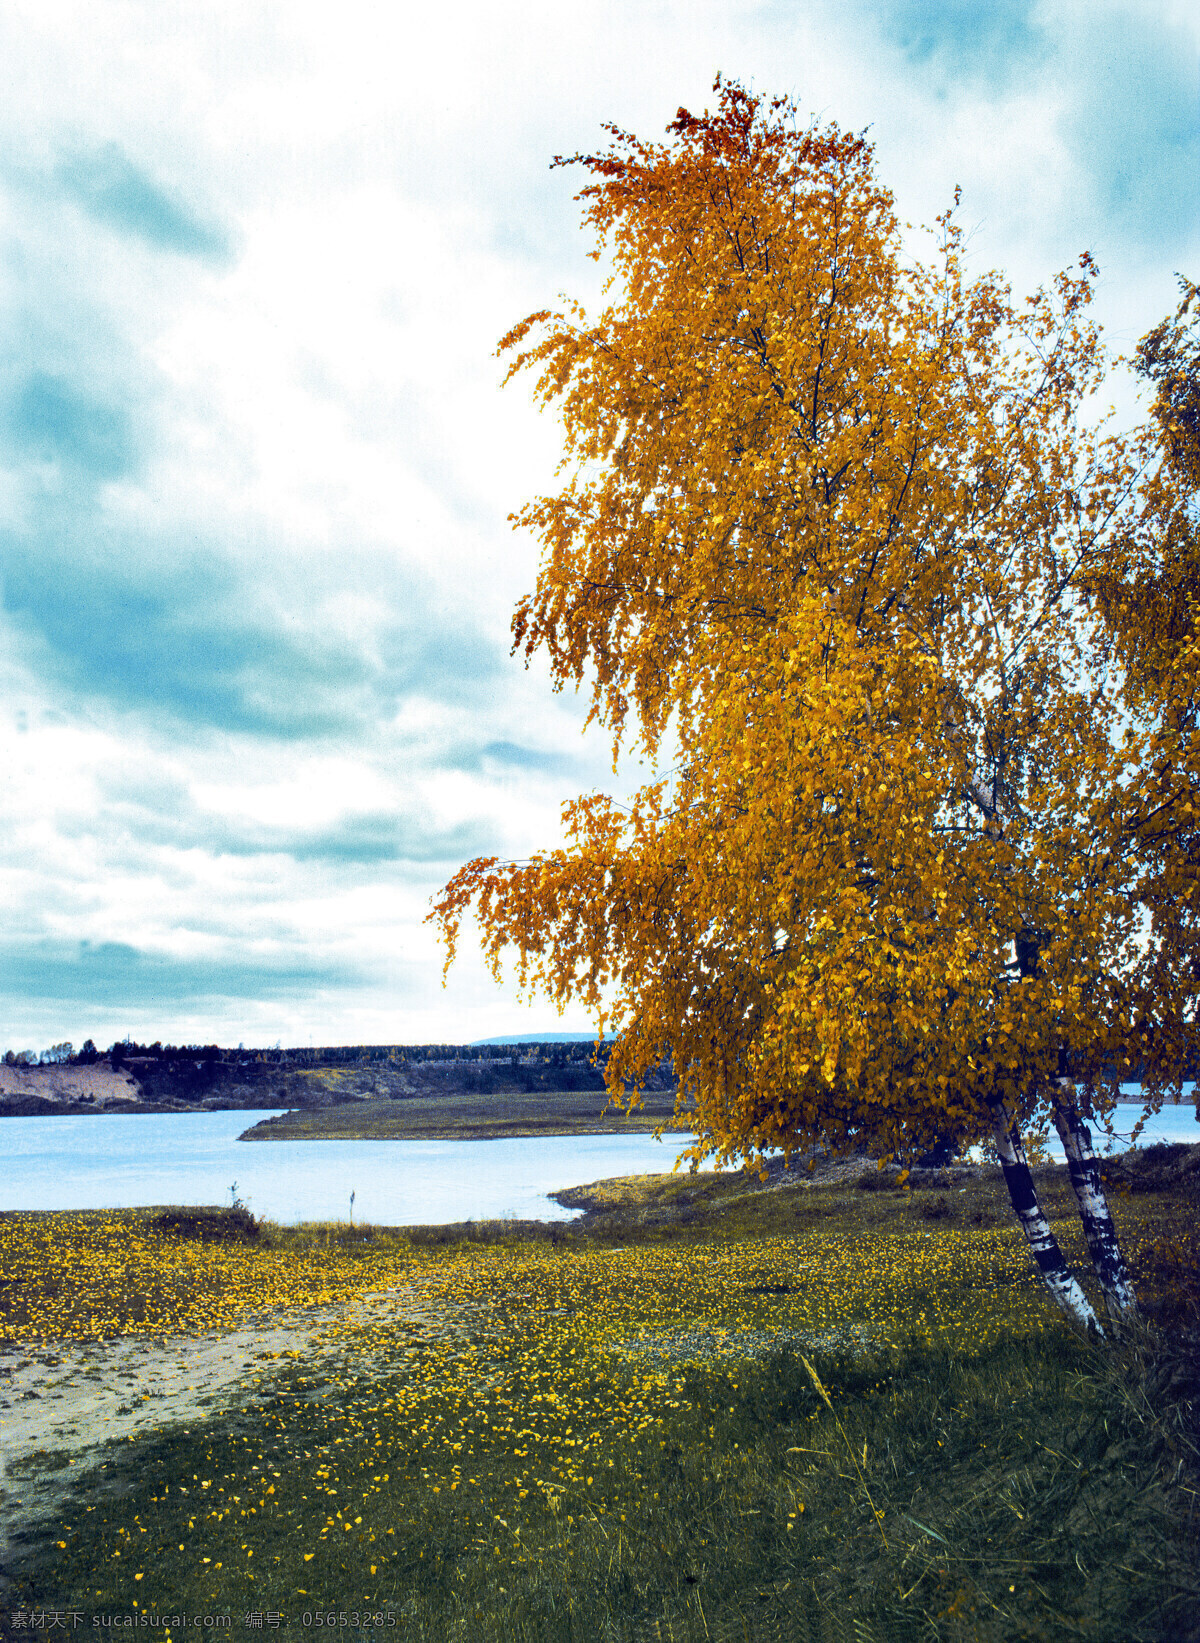 湖泊 树木 西伯利亚风景 湖面 美丽风景 美景 景色 风景摄影 花草树木 生物世界